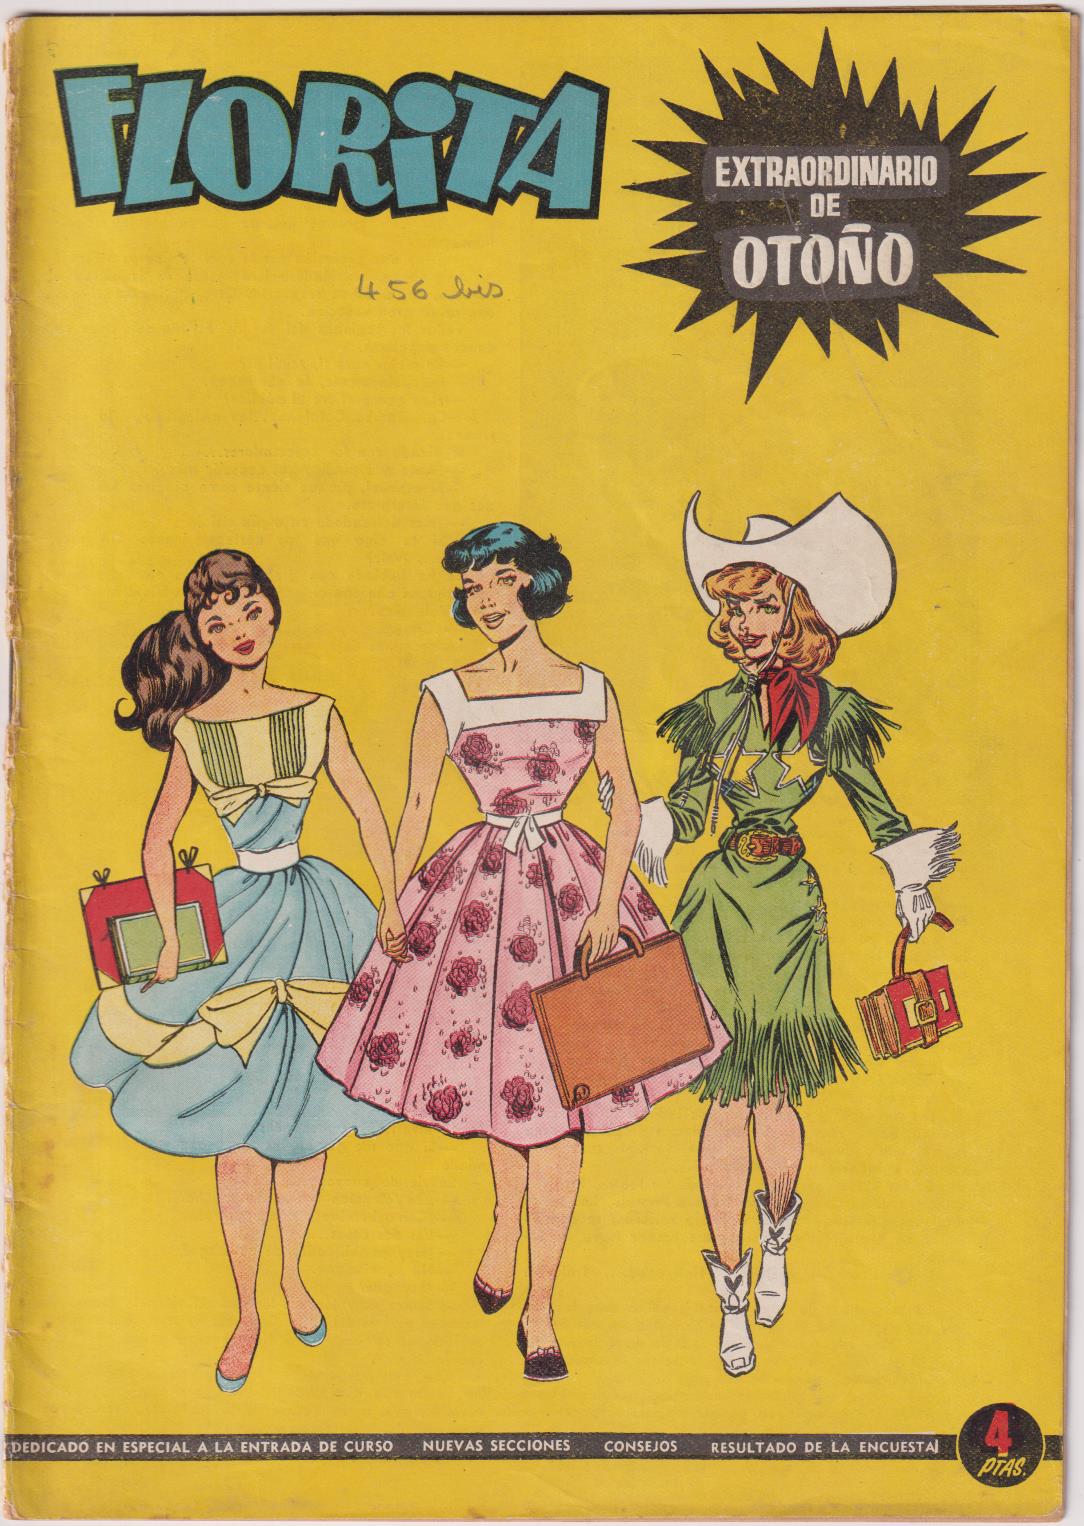 Florita. Extraordinario de Otoño. Toray 1958